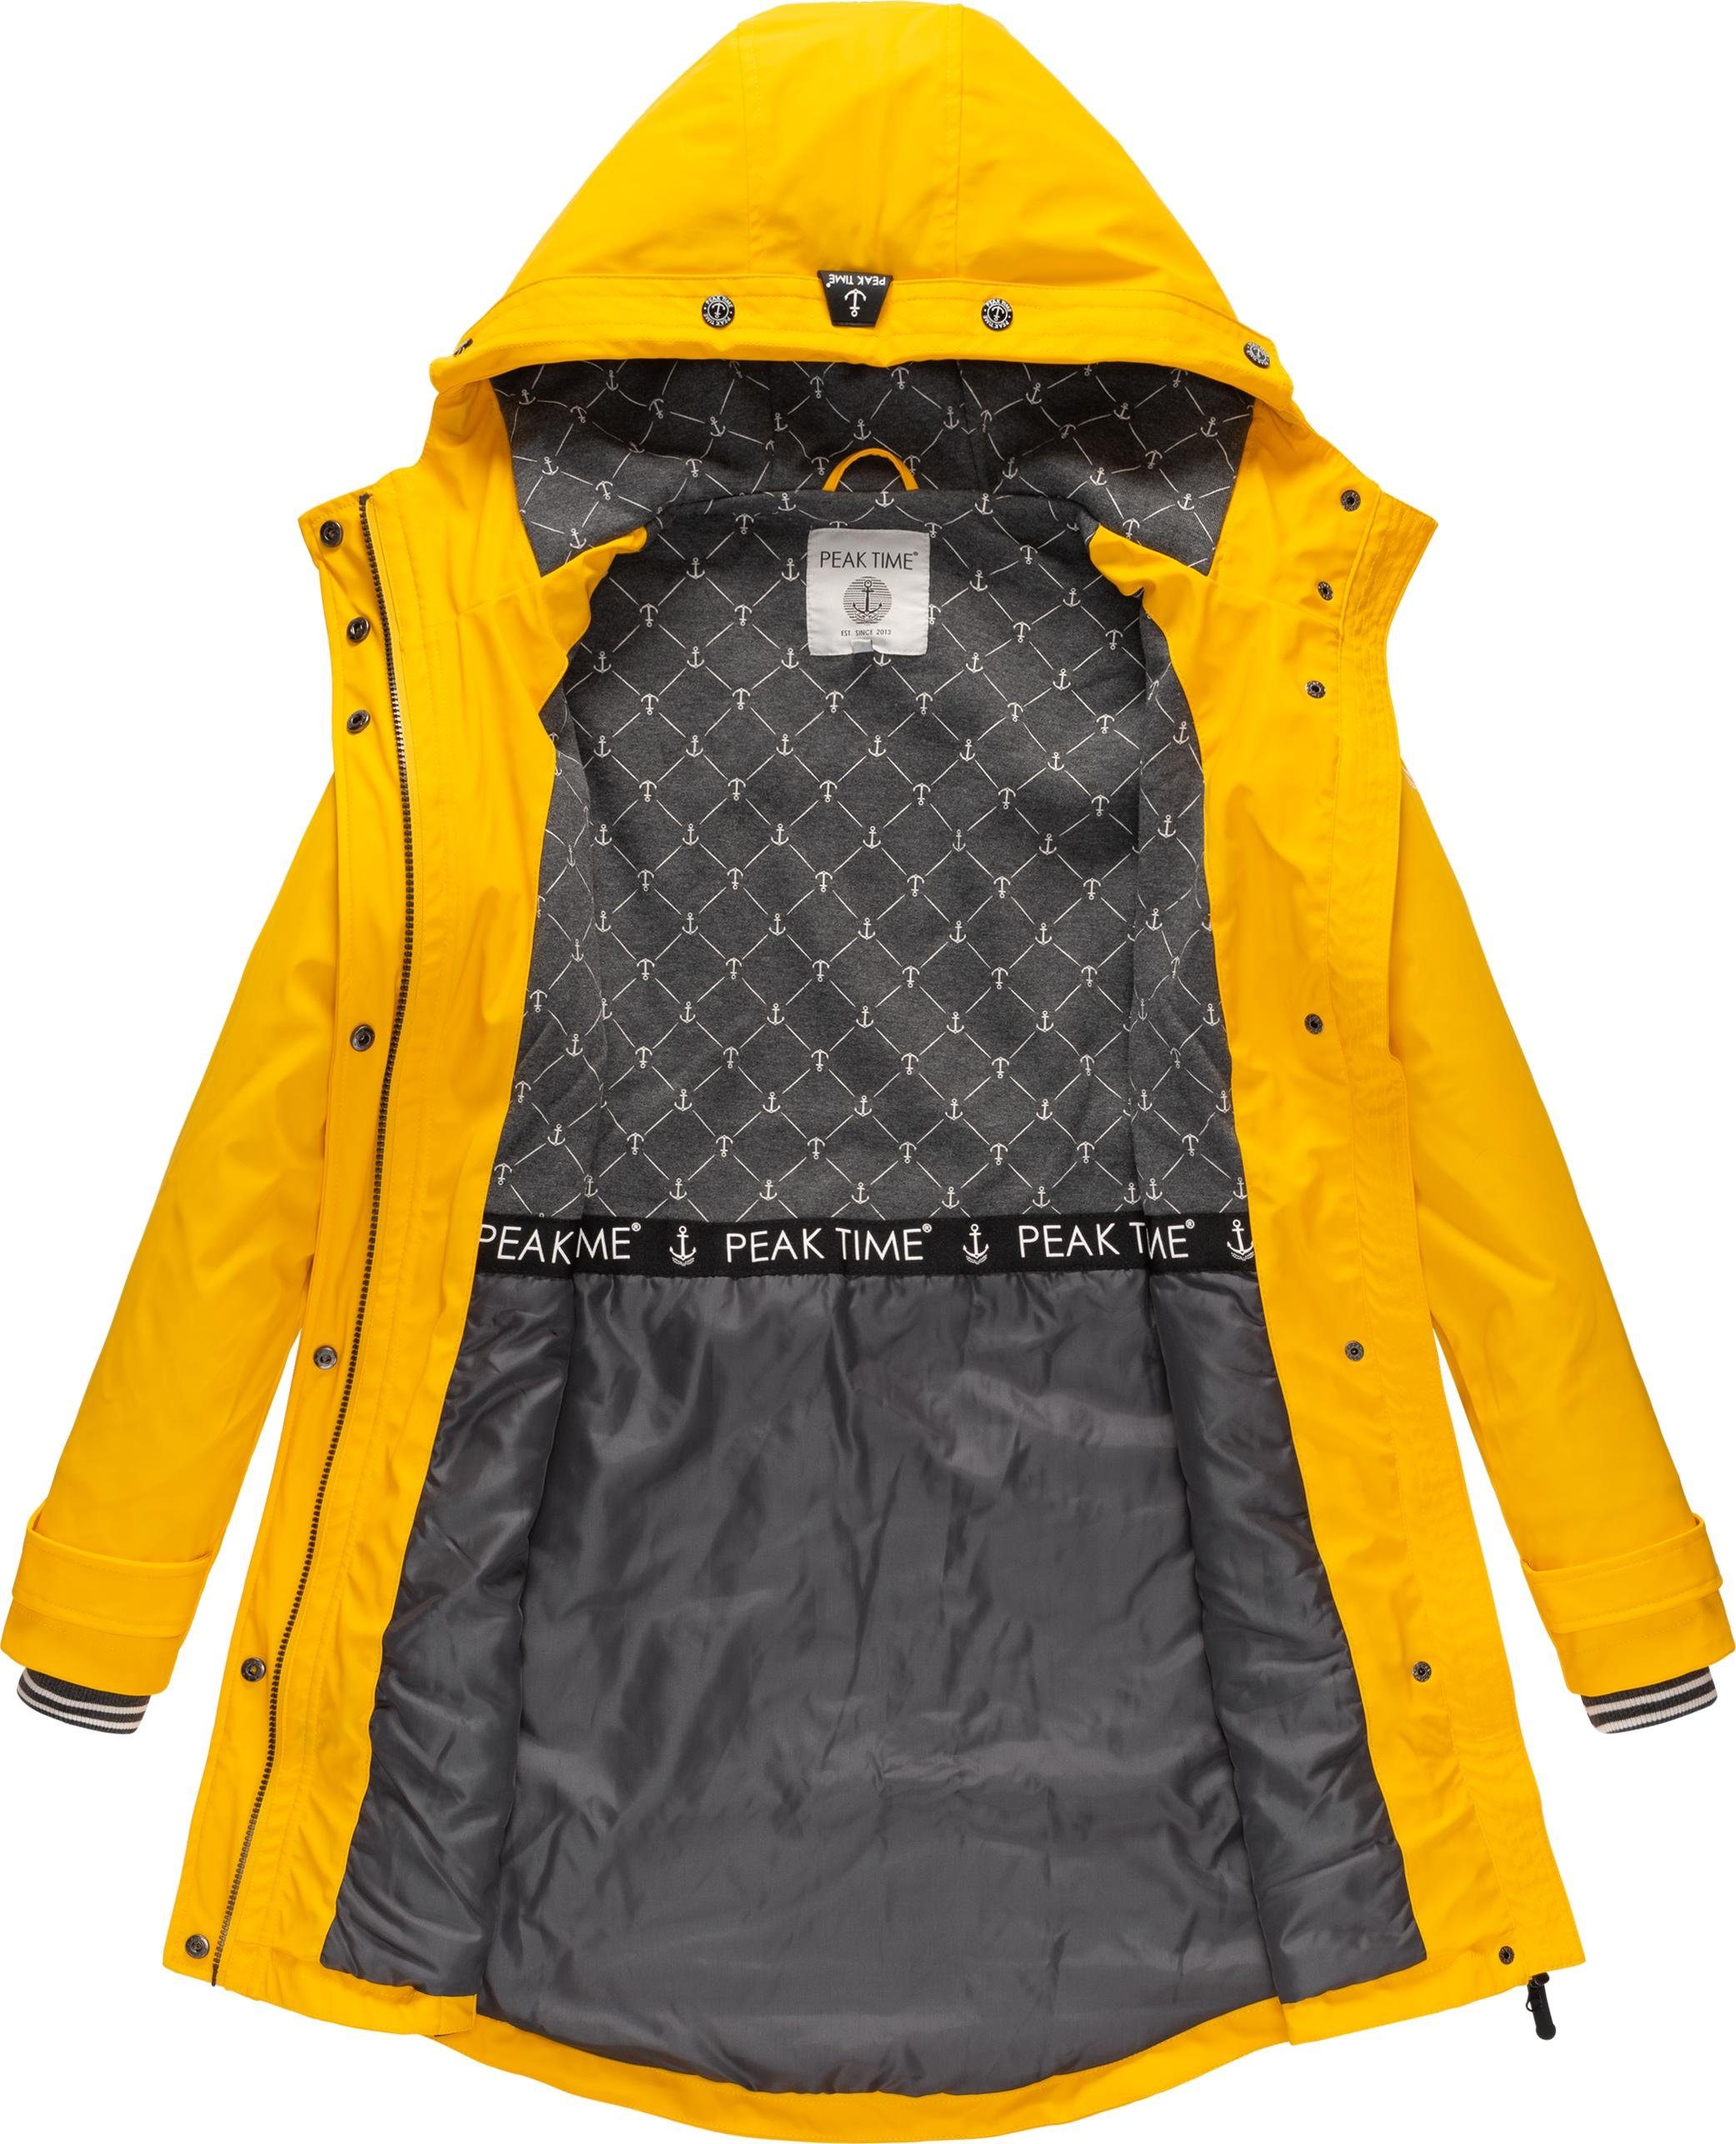 PEAK TIME Regenjacke L60042 taillierter stylisch für Damen Regenmantel dottergelb